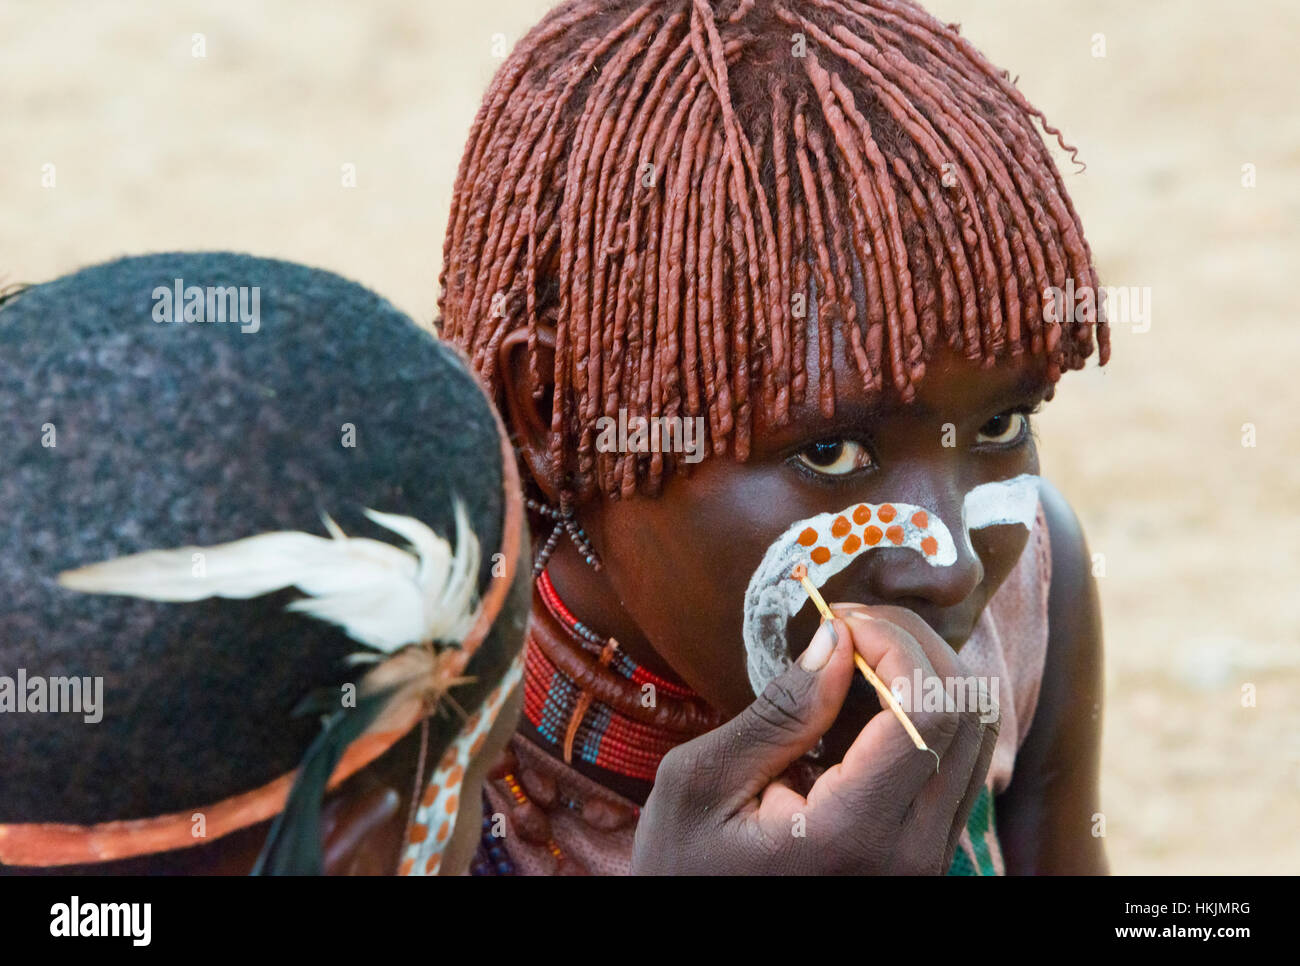 Hamar tribù le persone che si preparano per il bestiame Jumping (un evento cerimoniale di celebrare un Hamar uomo arriva di età), Sud Omo, Etiopia Foto Stock